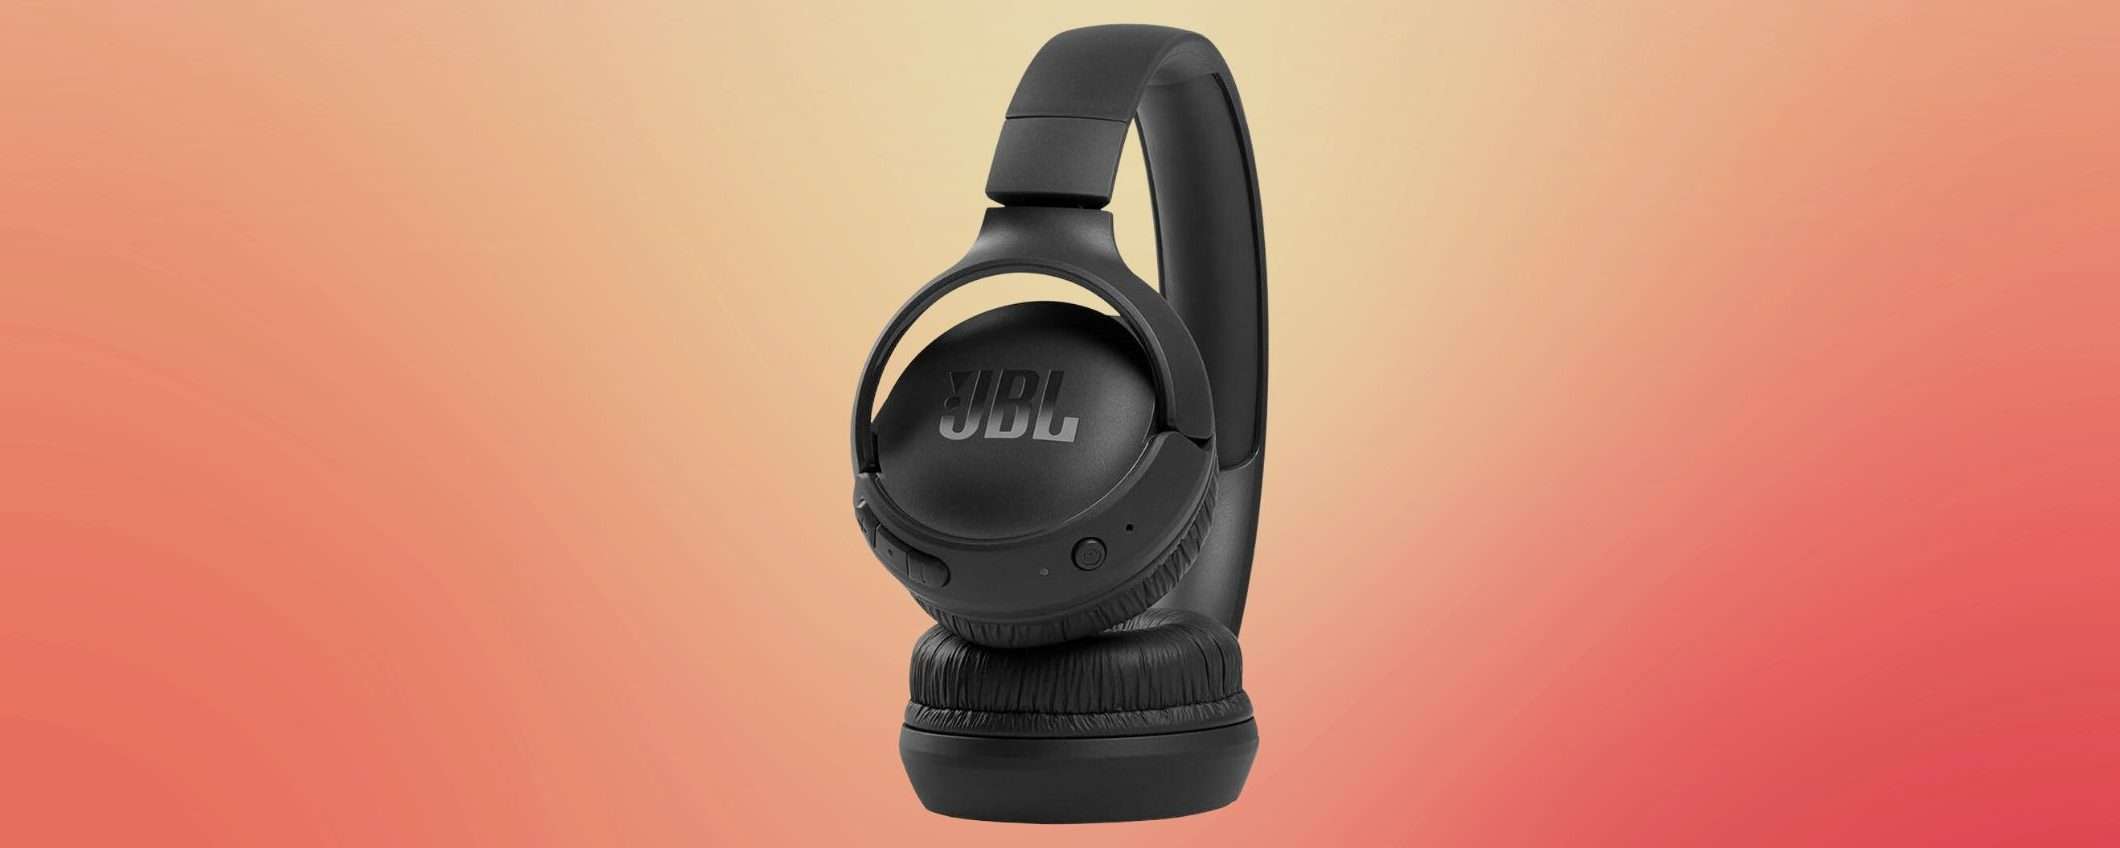 Cuffie wireless JBL a 25,99€: MAXI SCONTO del 48% su Amazon